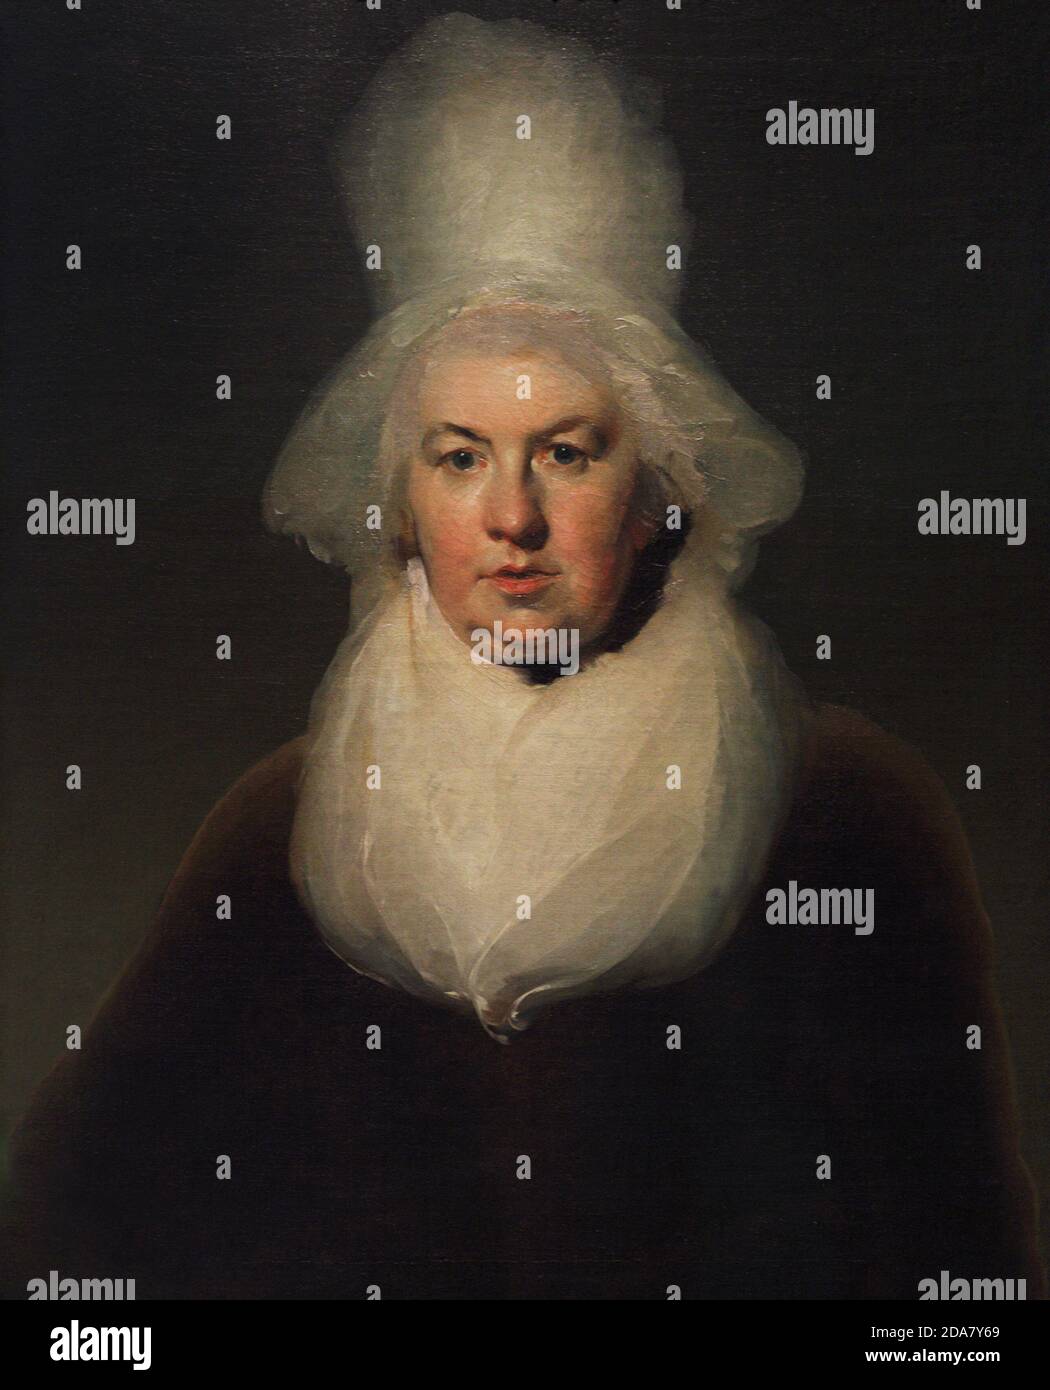 Sarah Trimmer (1741-1819). Schriftsteller und Kritiker der britischen Kinderliteratur des 18. Jahrhunderts sowie ein Reformer. Porträt von Sir Thomas Lawrence (1769-1830). Öl auf Leinwand (76,2 x 63,5 cm), c. 1790. National Portrait Gallery. London, England, Vereinigtes Königreich. Stockfoto